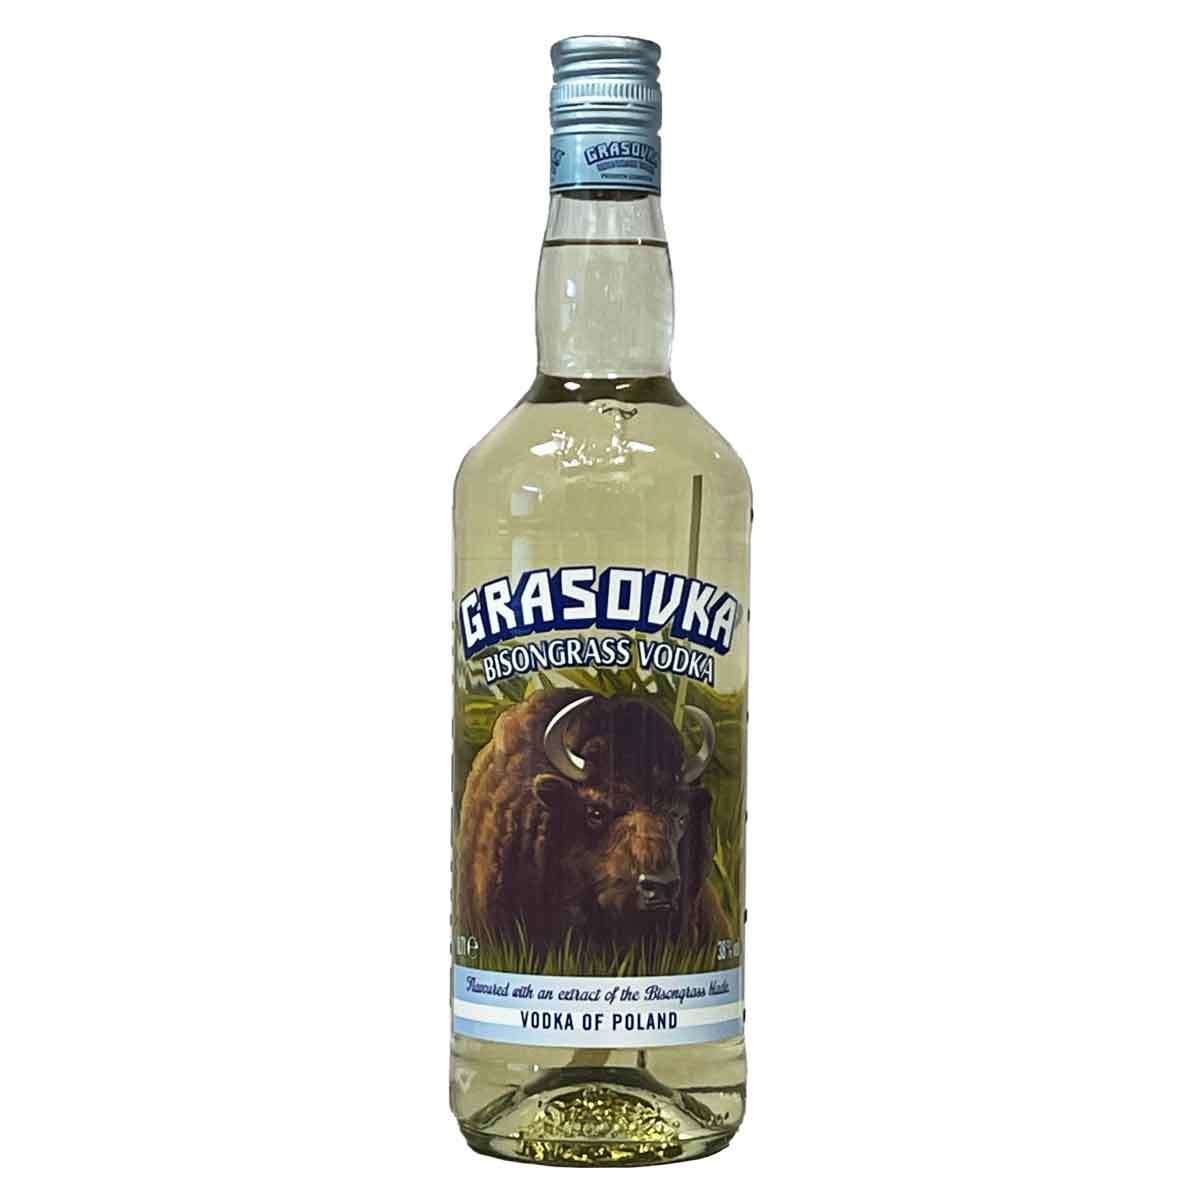 | Viel-Durst Bisongrass 38% Grasovka (0,7l) Vodka